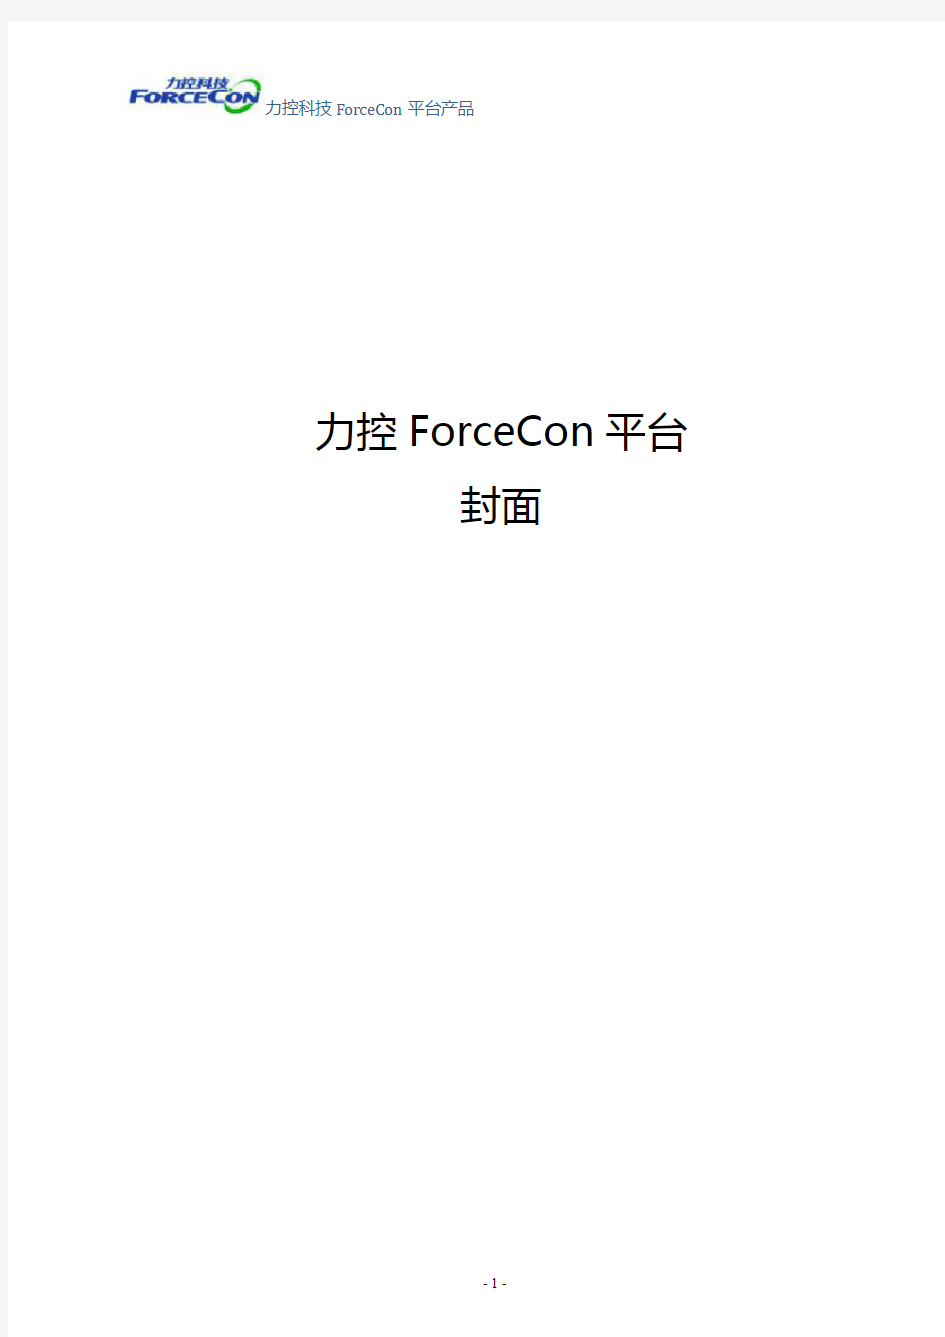 003-2016力控forcecon platform软件平台宣传手册